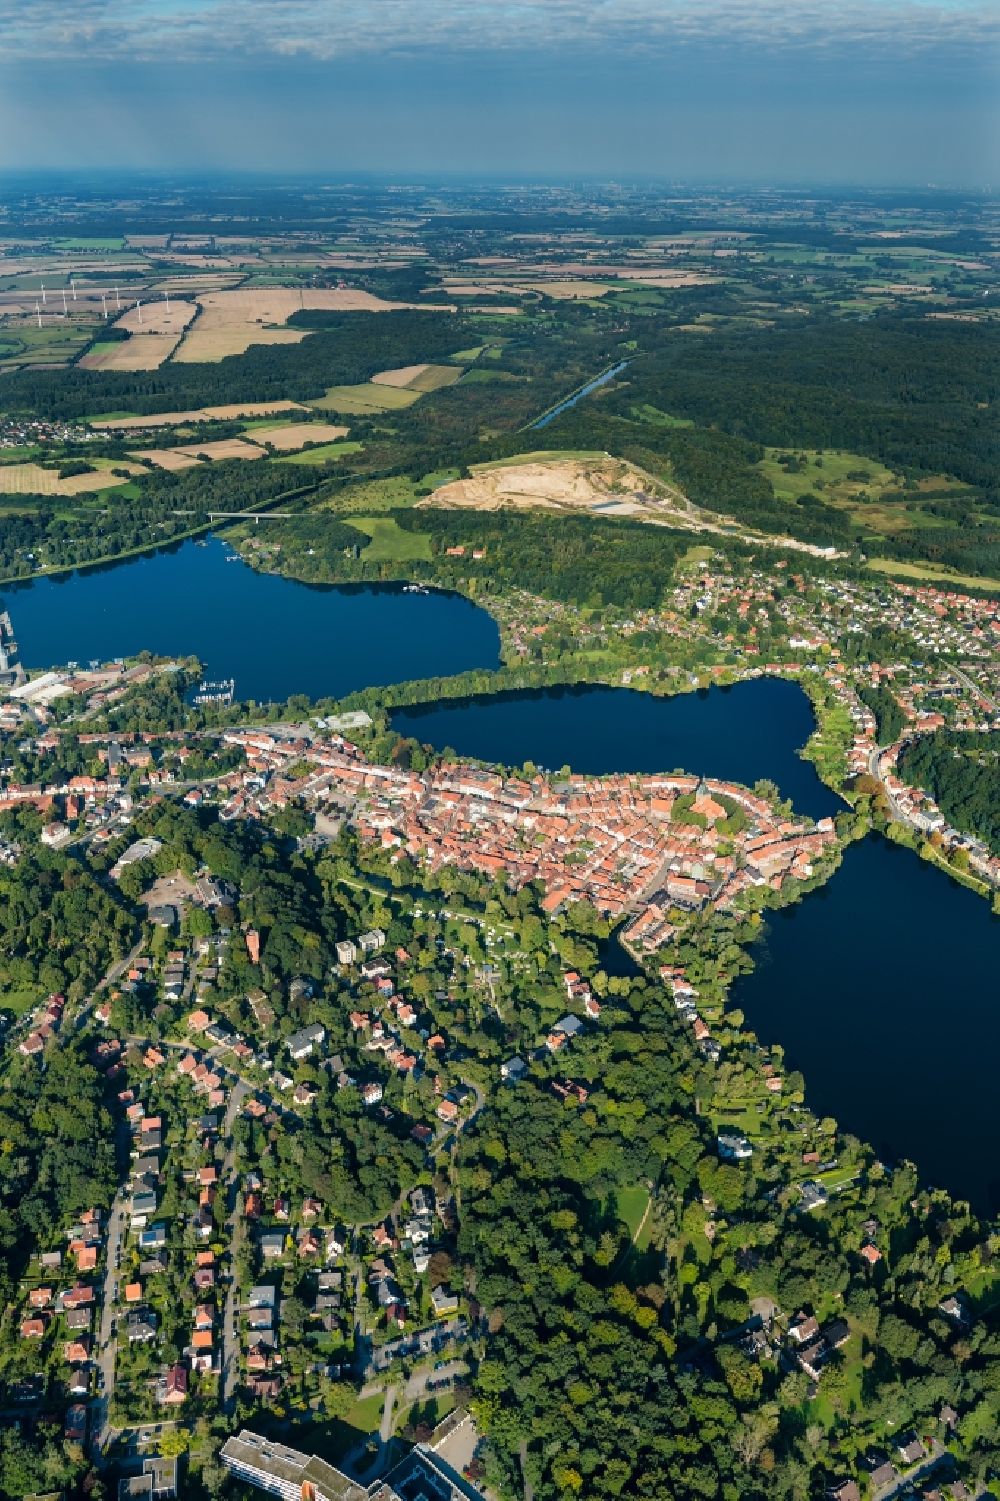 Luftaufnahme Mölln - Stadtansicht des Innenstadtbereiches zwischen Stadtsee und Schulsee in Mölln im Bundesland Schleswig-Holstein